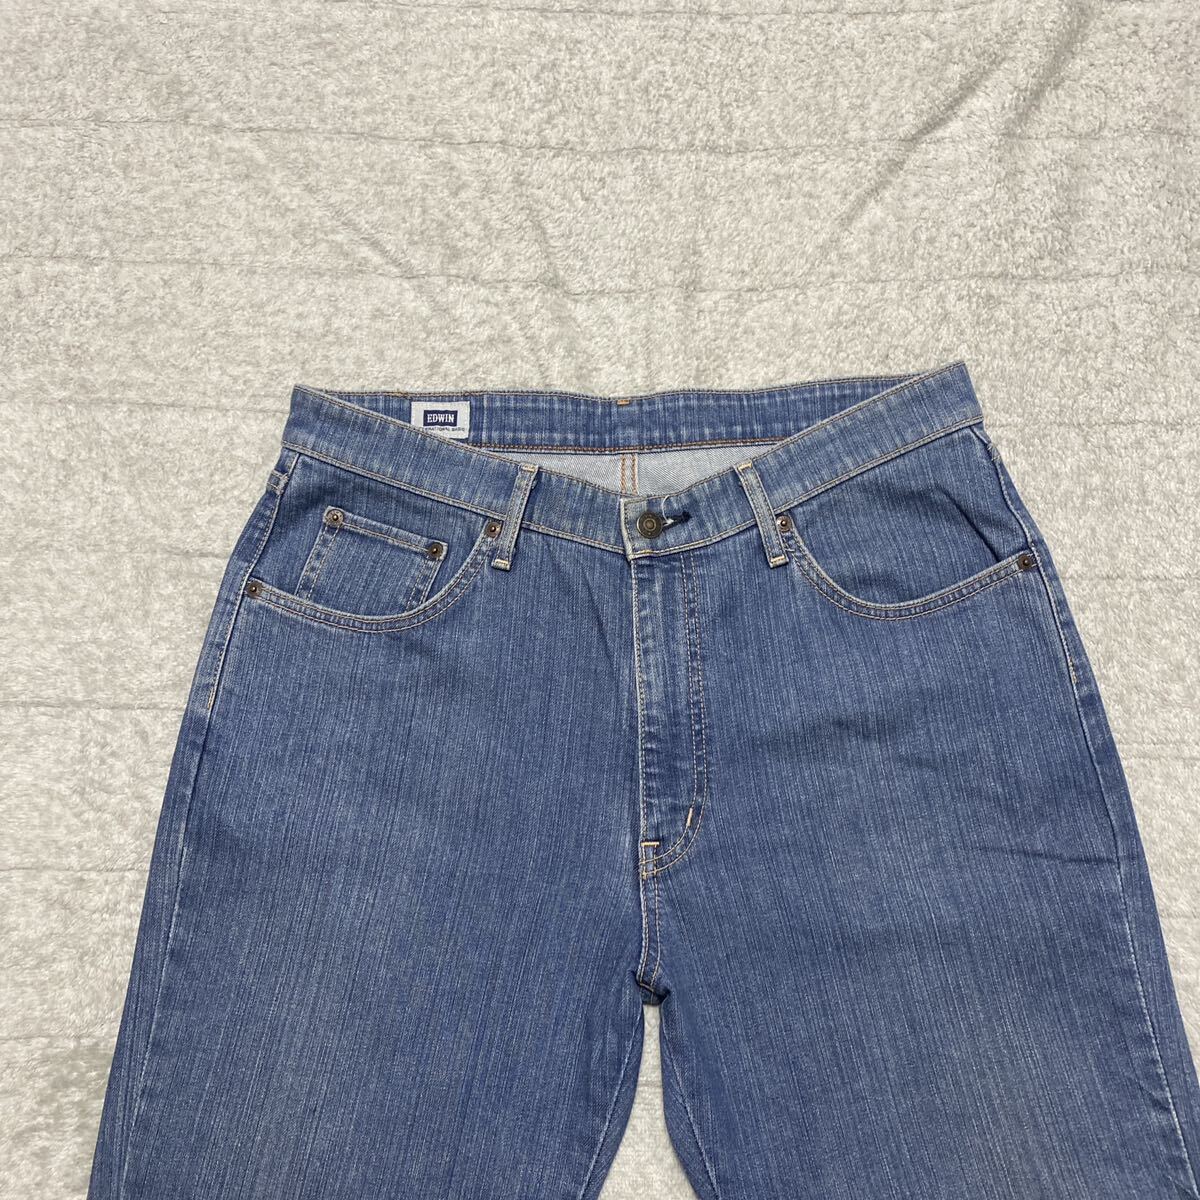 3C EDWIN Edwin S403 Denim jeans ji- bread pants 35 MADE IN JAPAN made in Japan STRAIGHT strut stretch cheap 